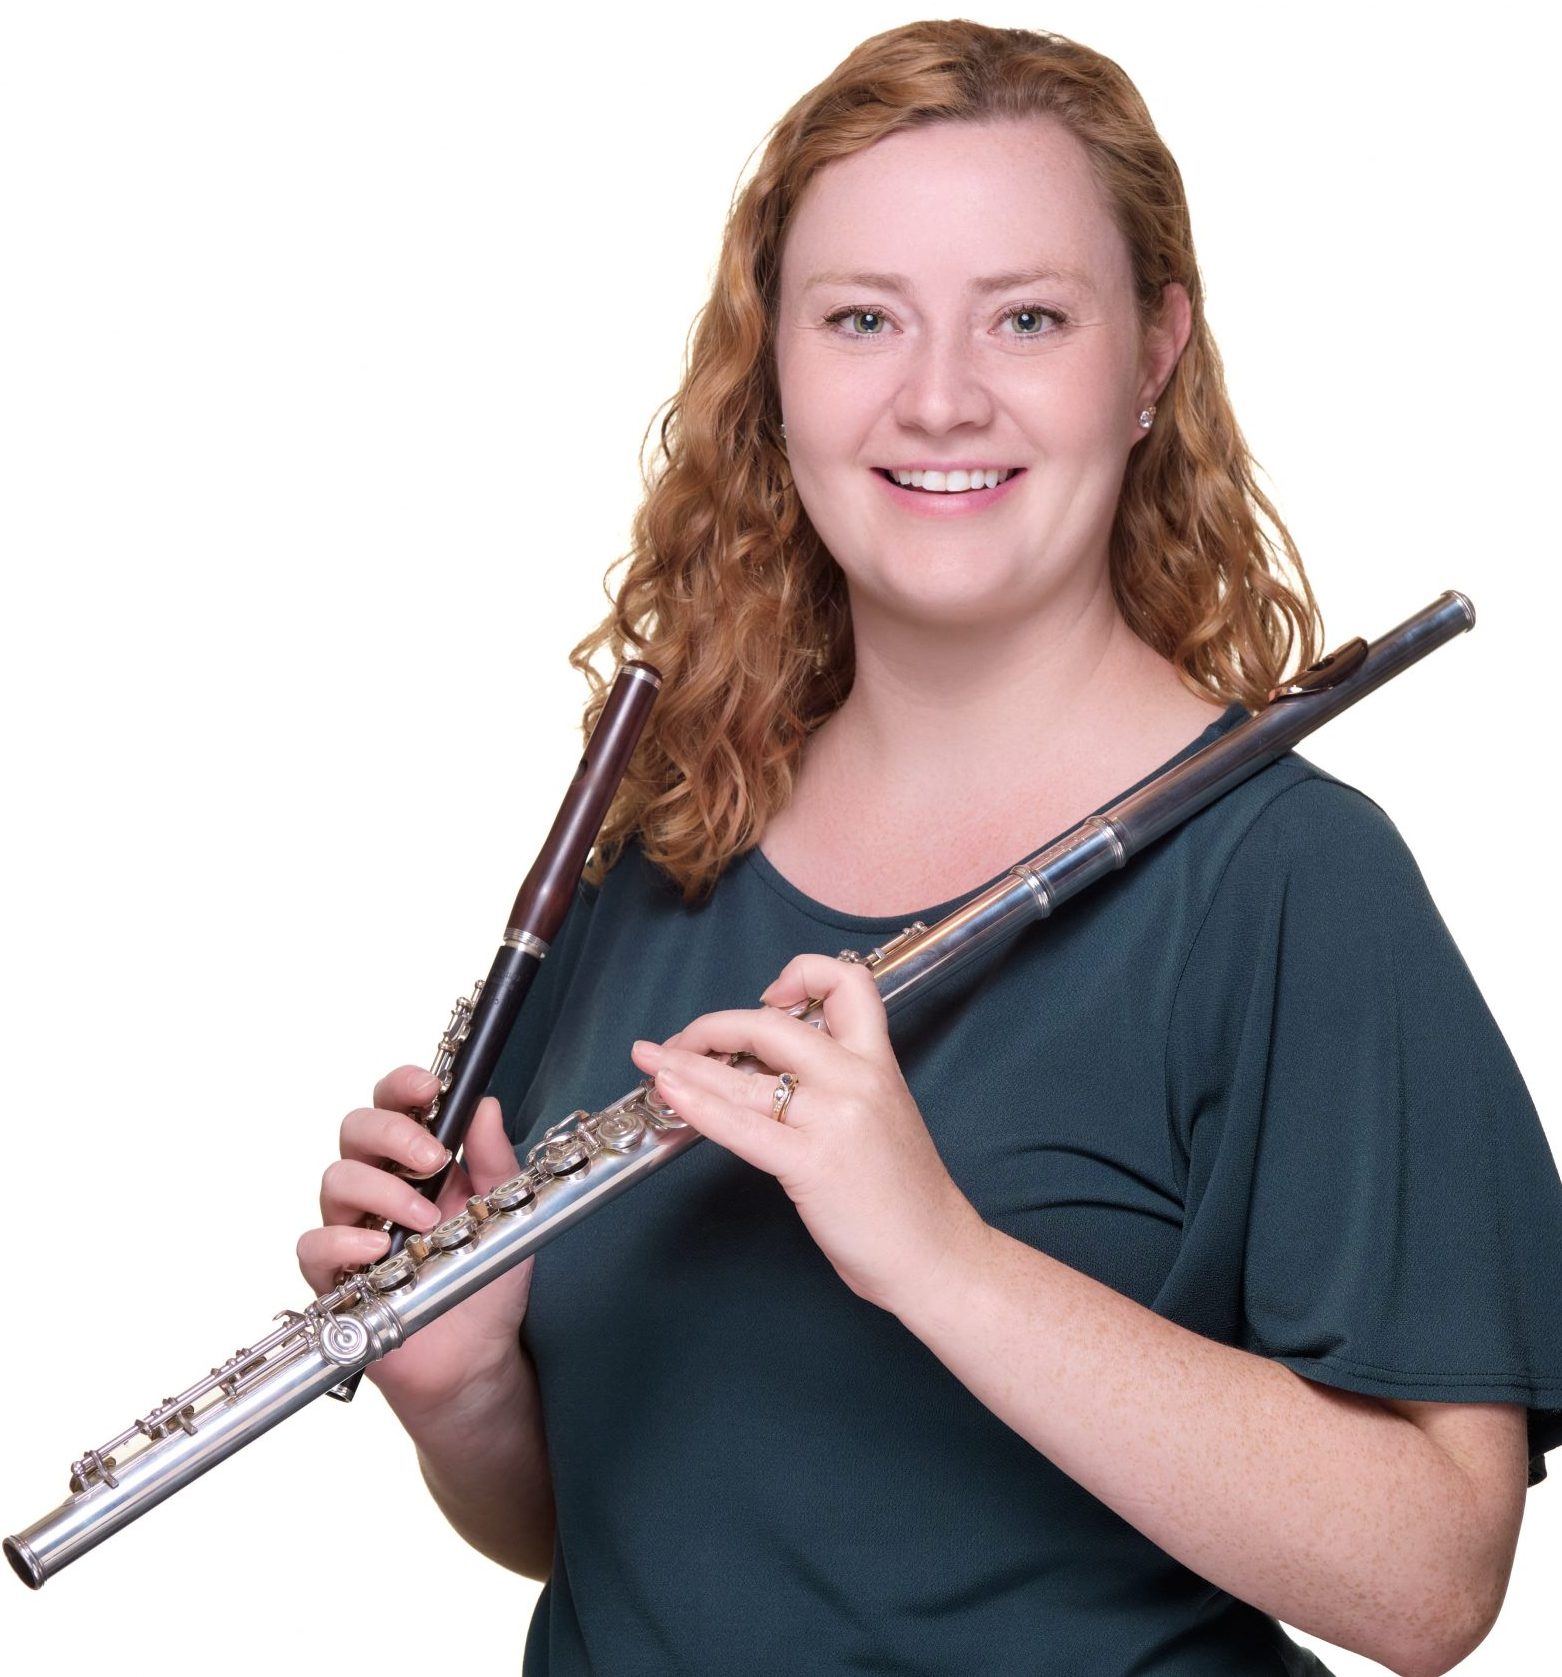 Sorcha holding a piccolo and flute